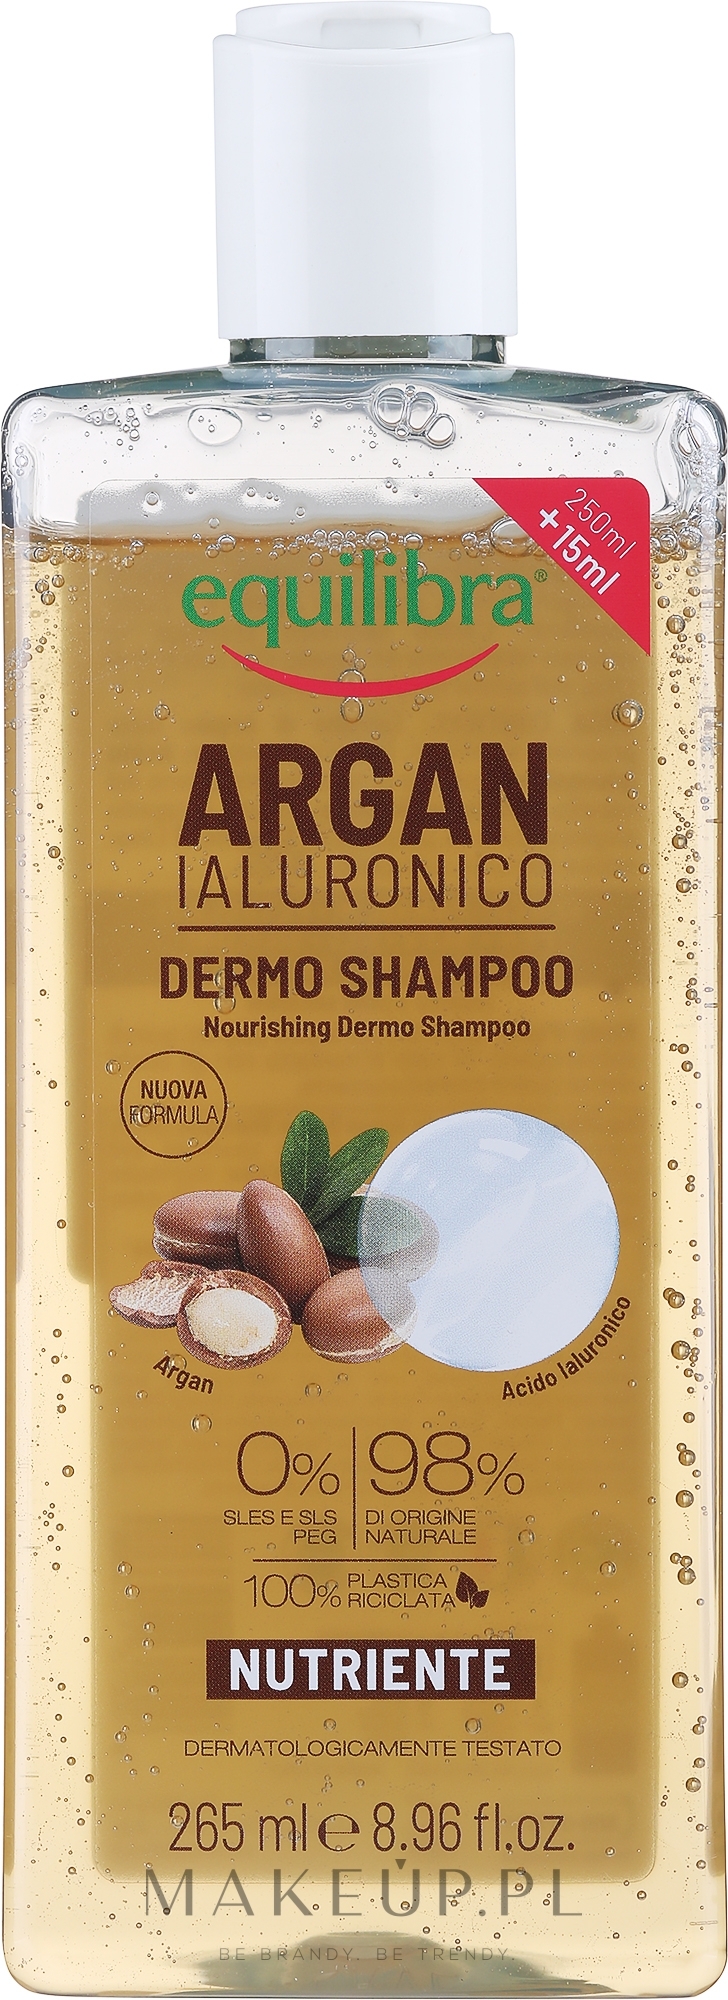 equilibra argan szampon ochronny do włosów 250ml